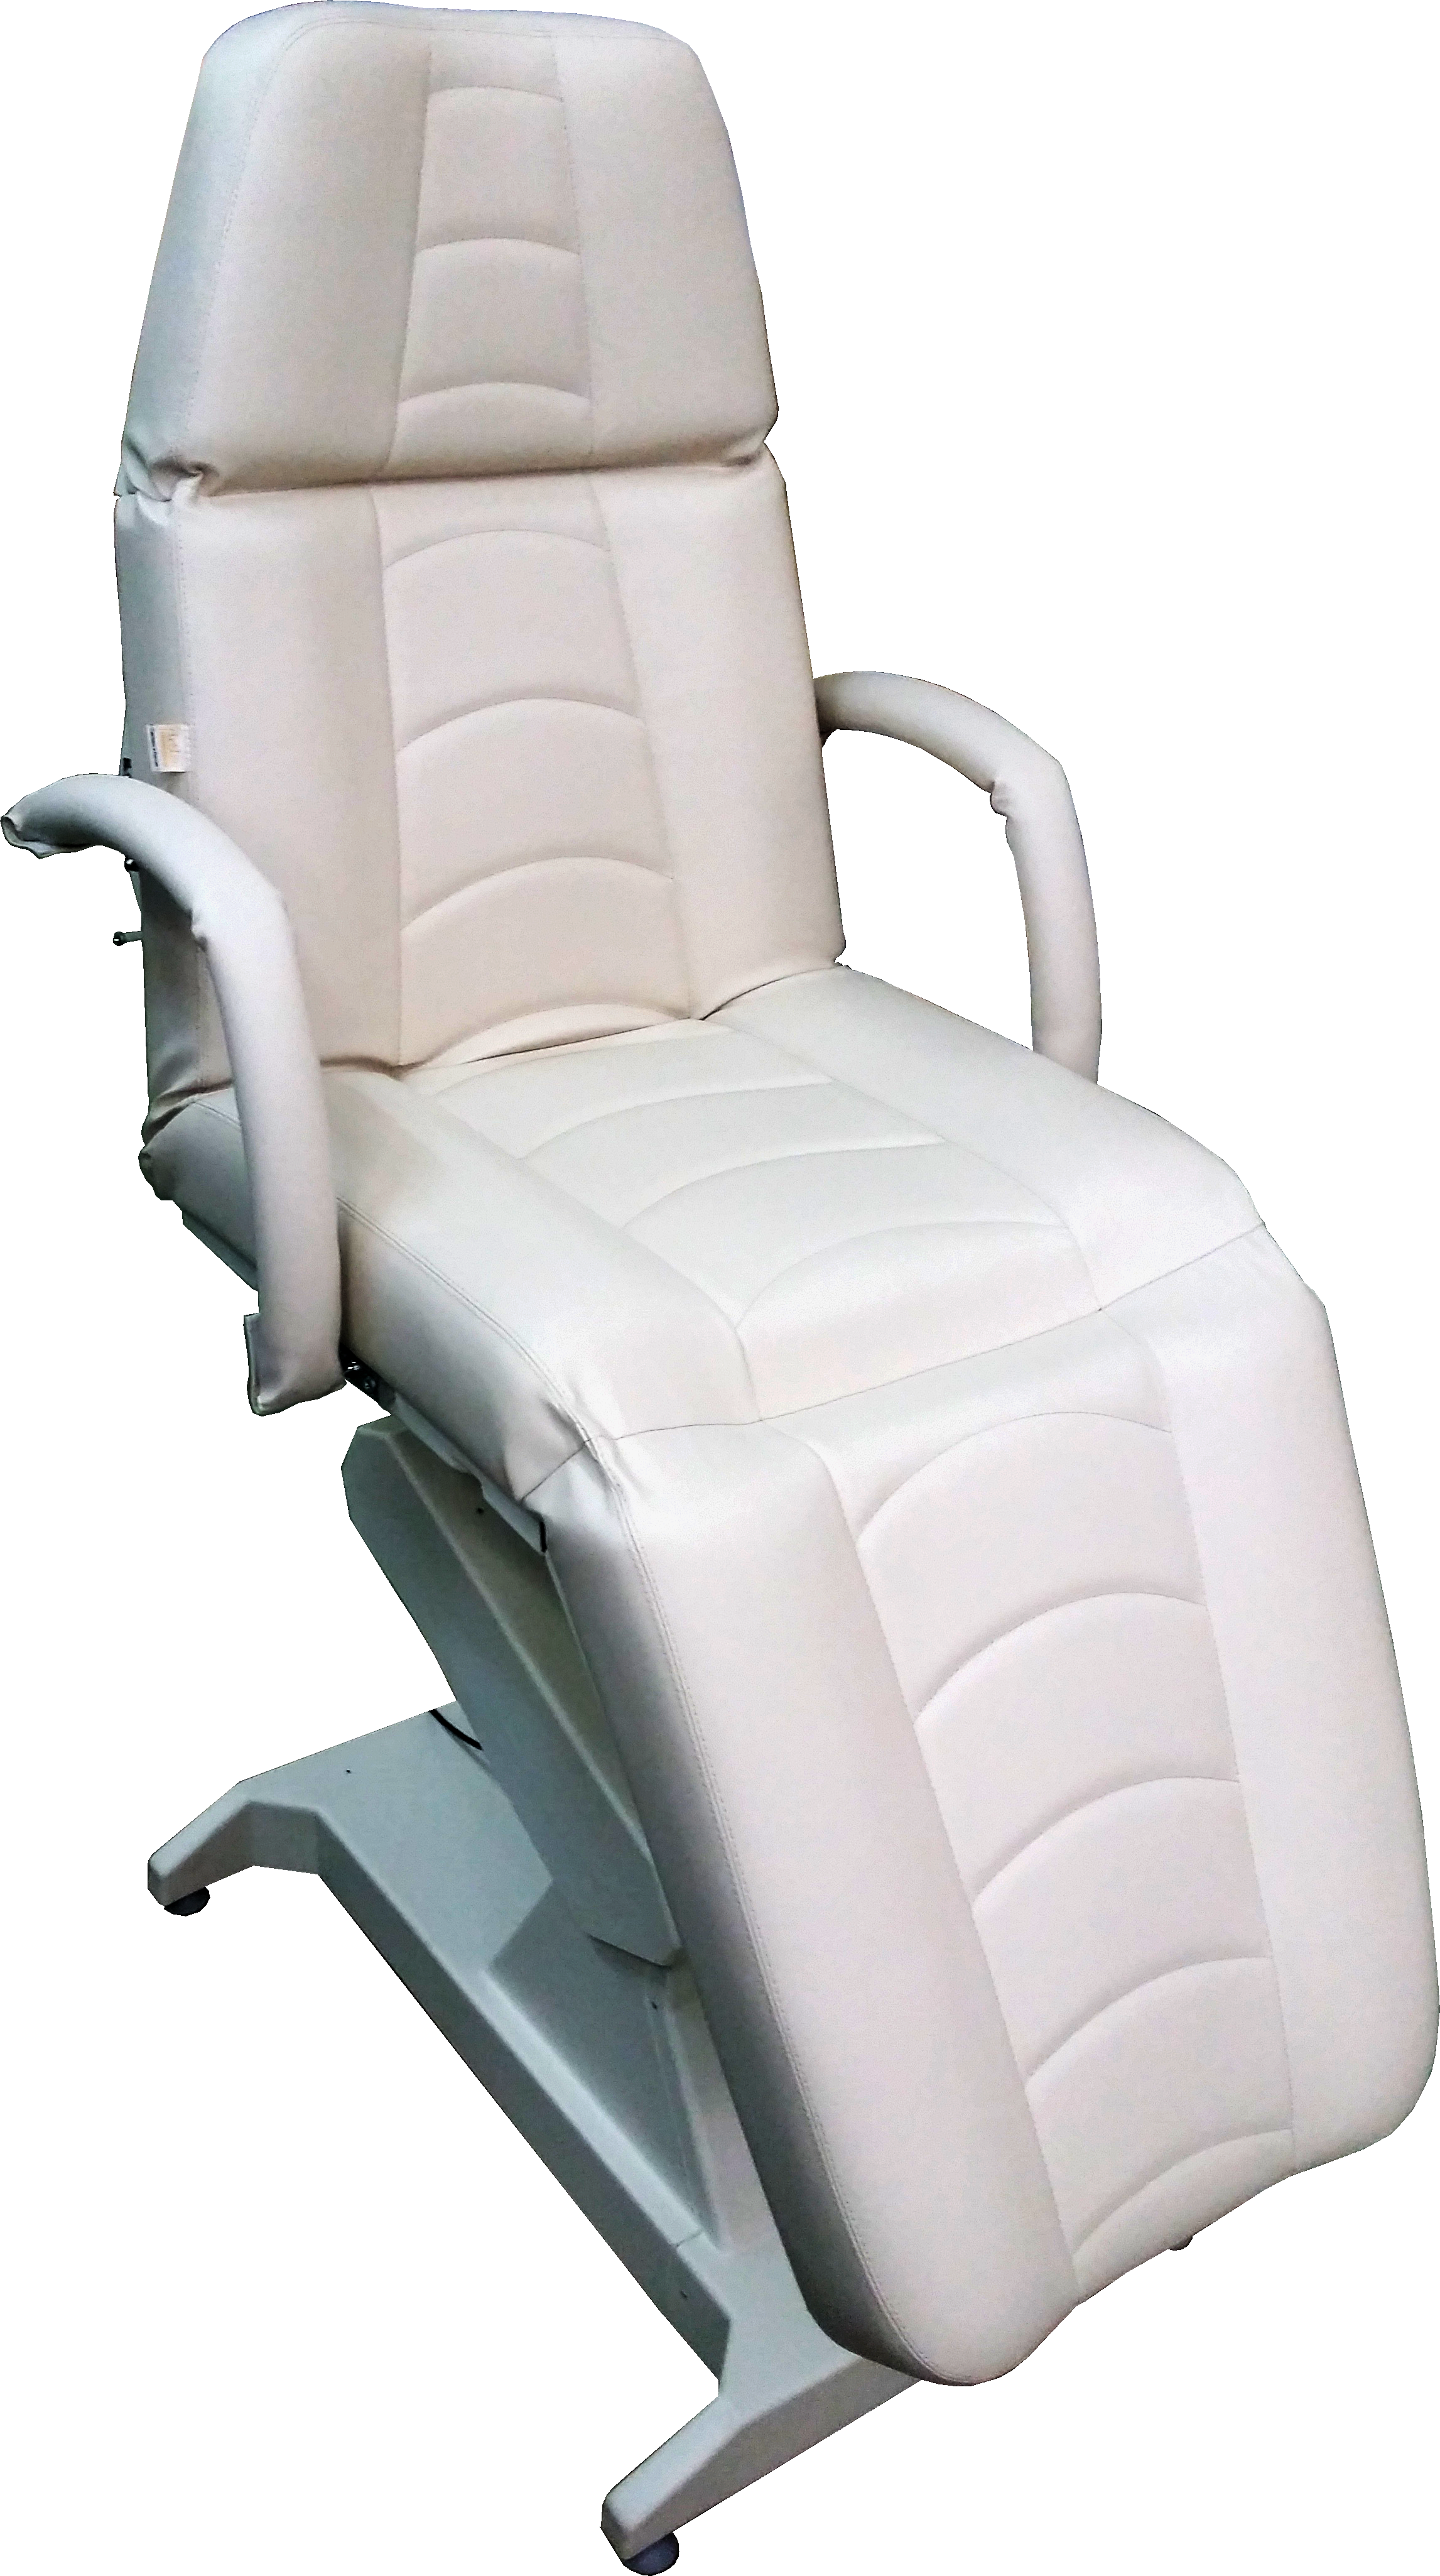 Кресло процедурное (для мезотерапии) с электроприводом ОД-4 (Мезо), с откидными подлокотниками, с дистанционным пультом управления (проводным).